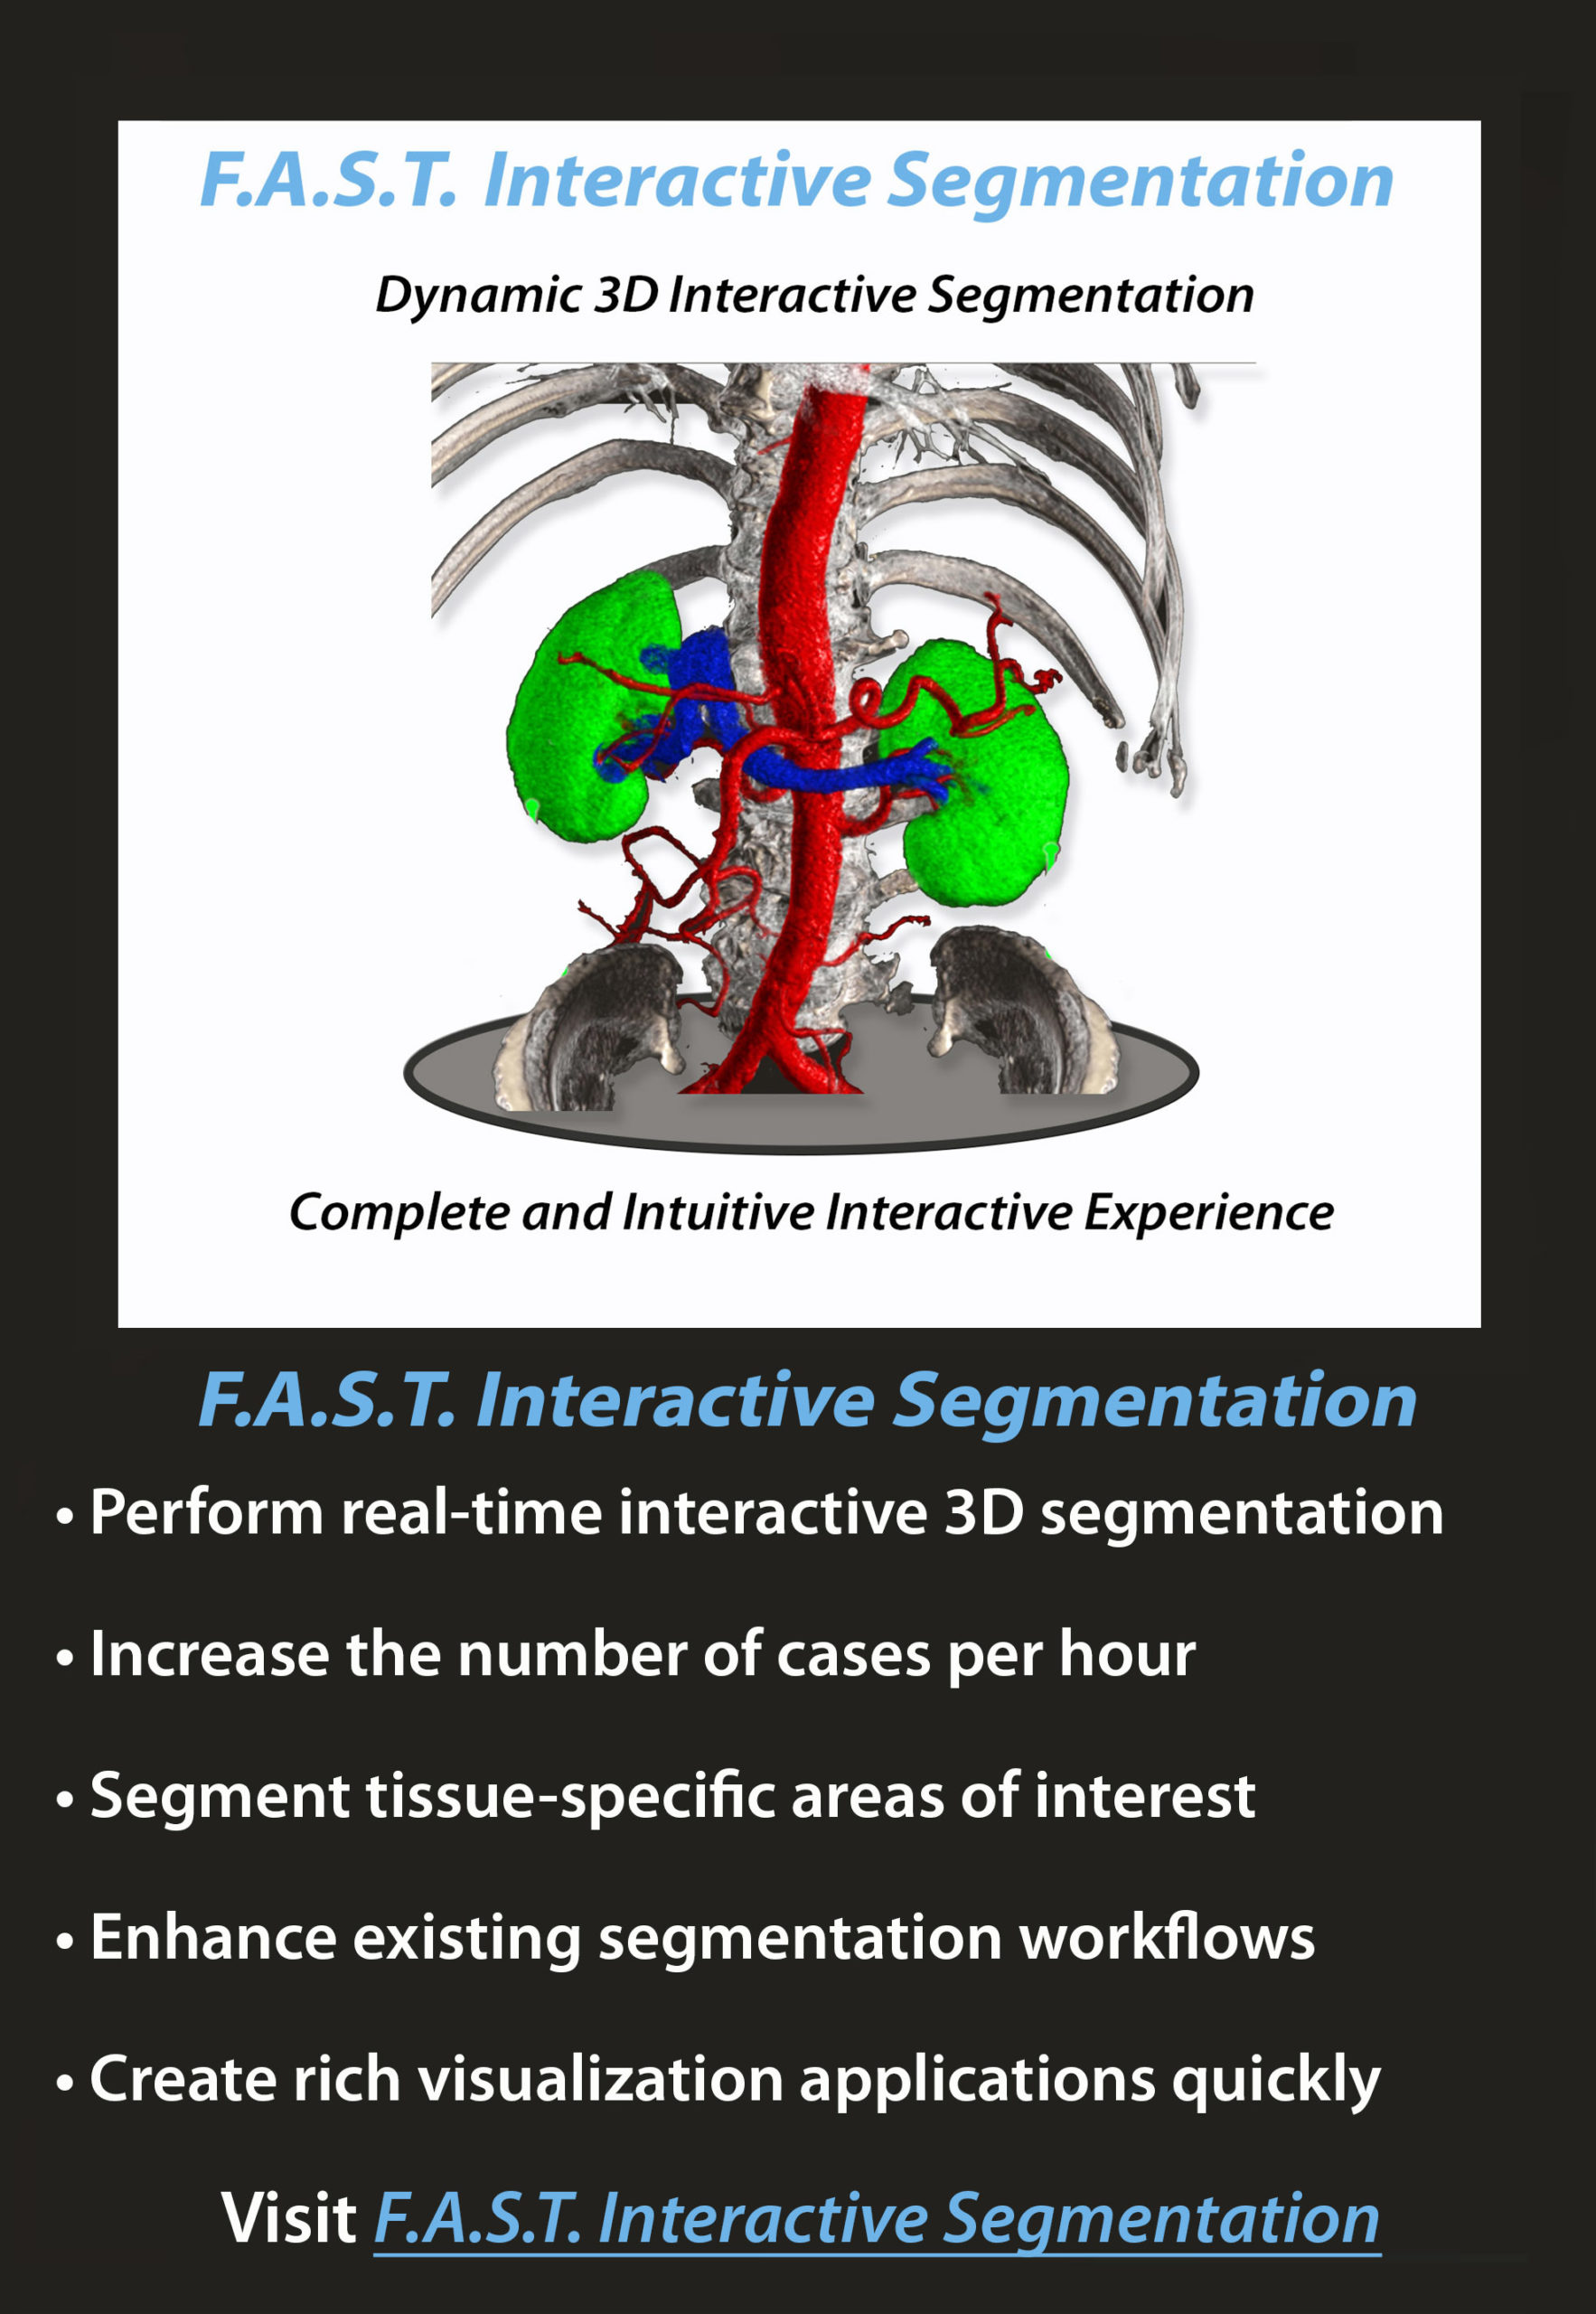 F.A.S.T. Interactive Segmentation